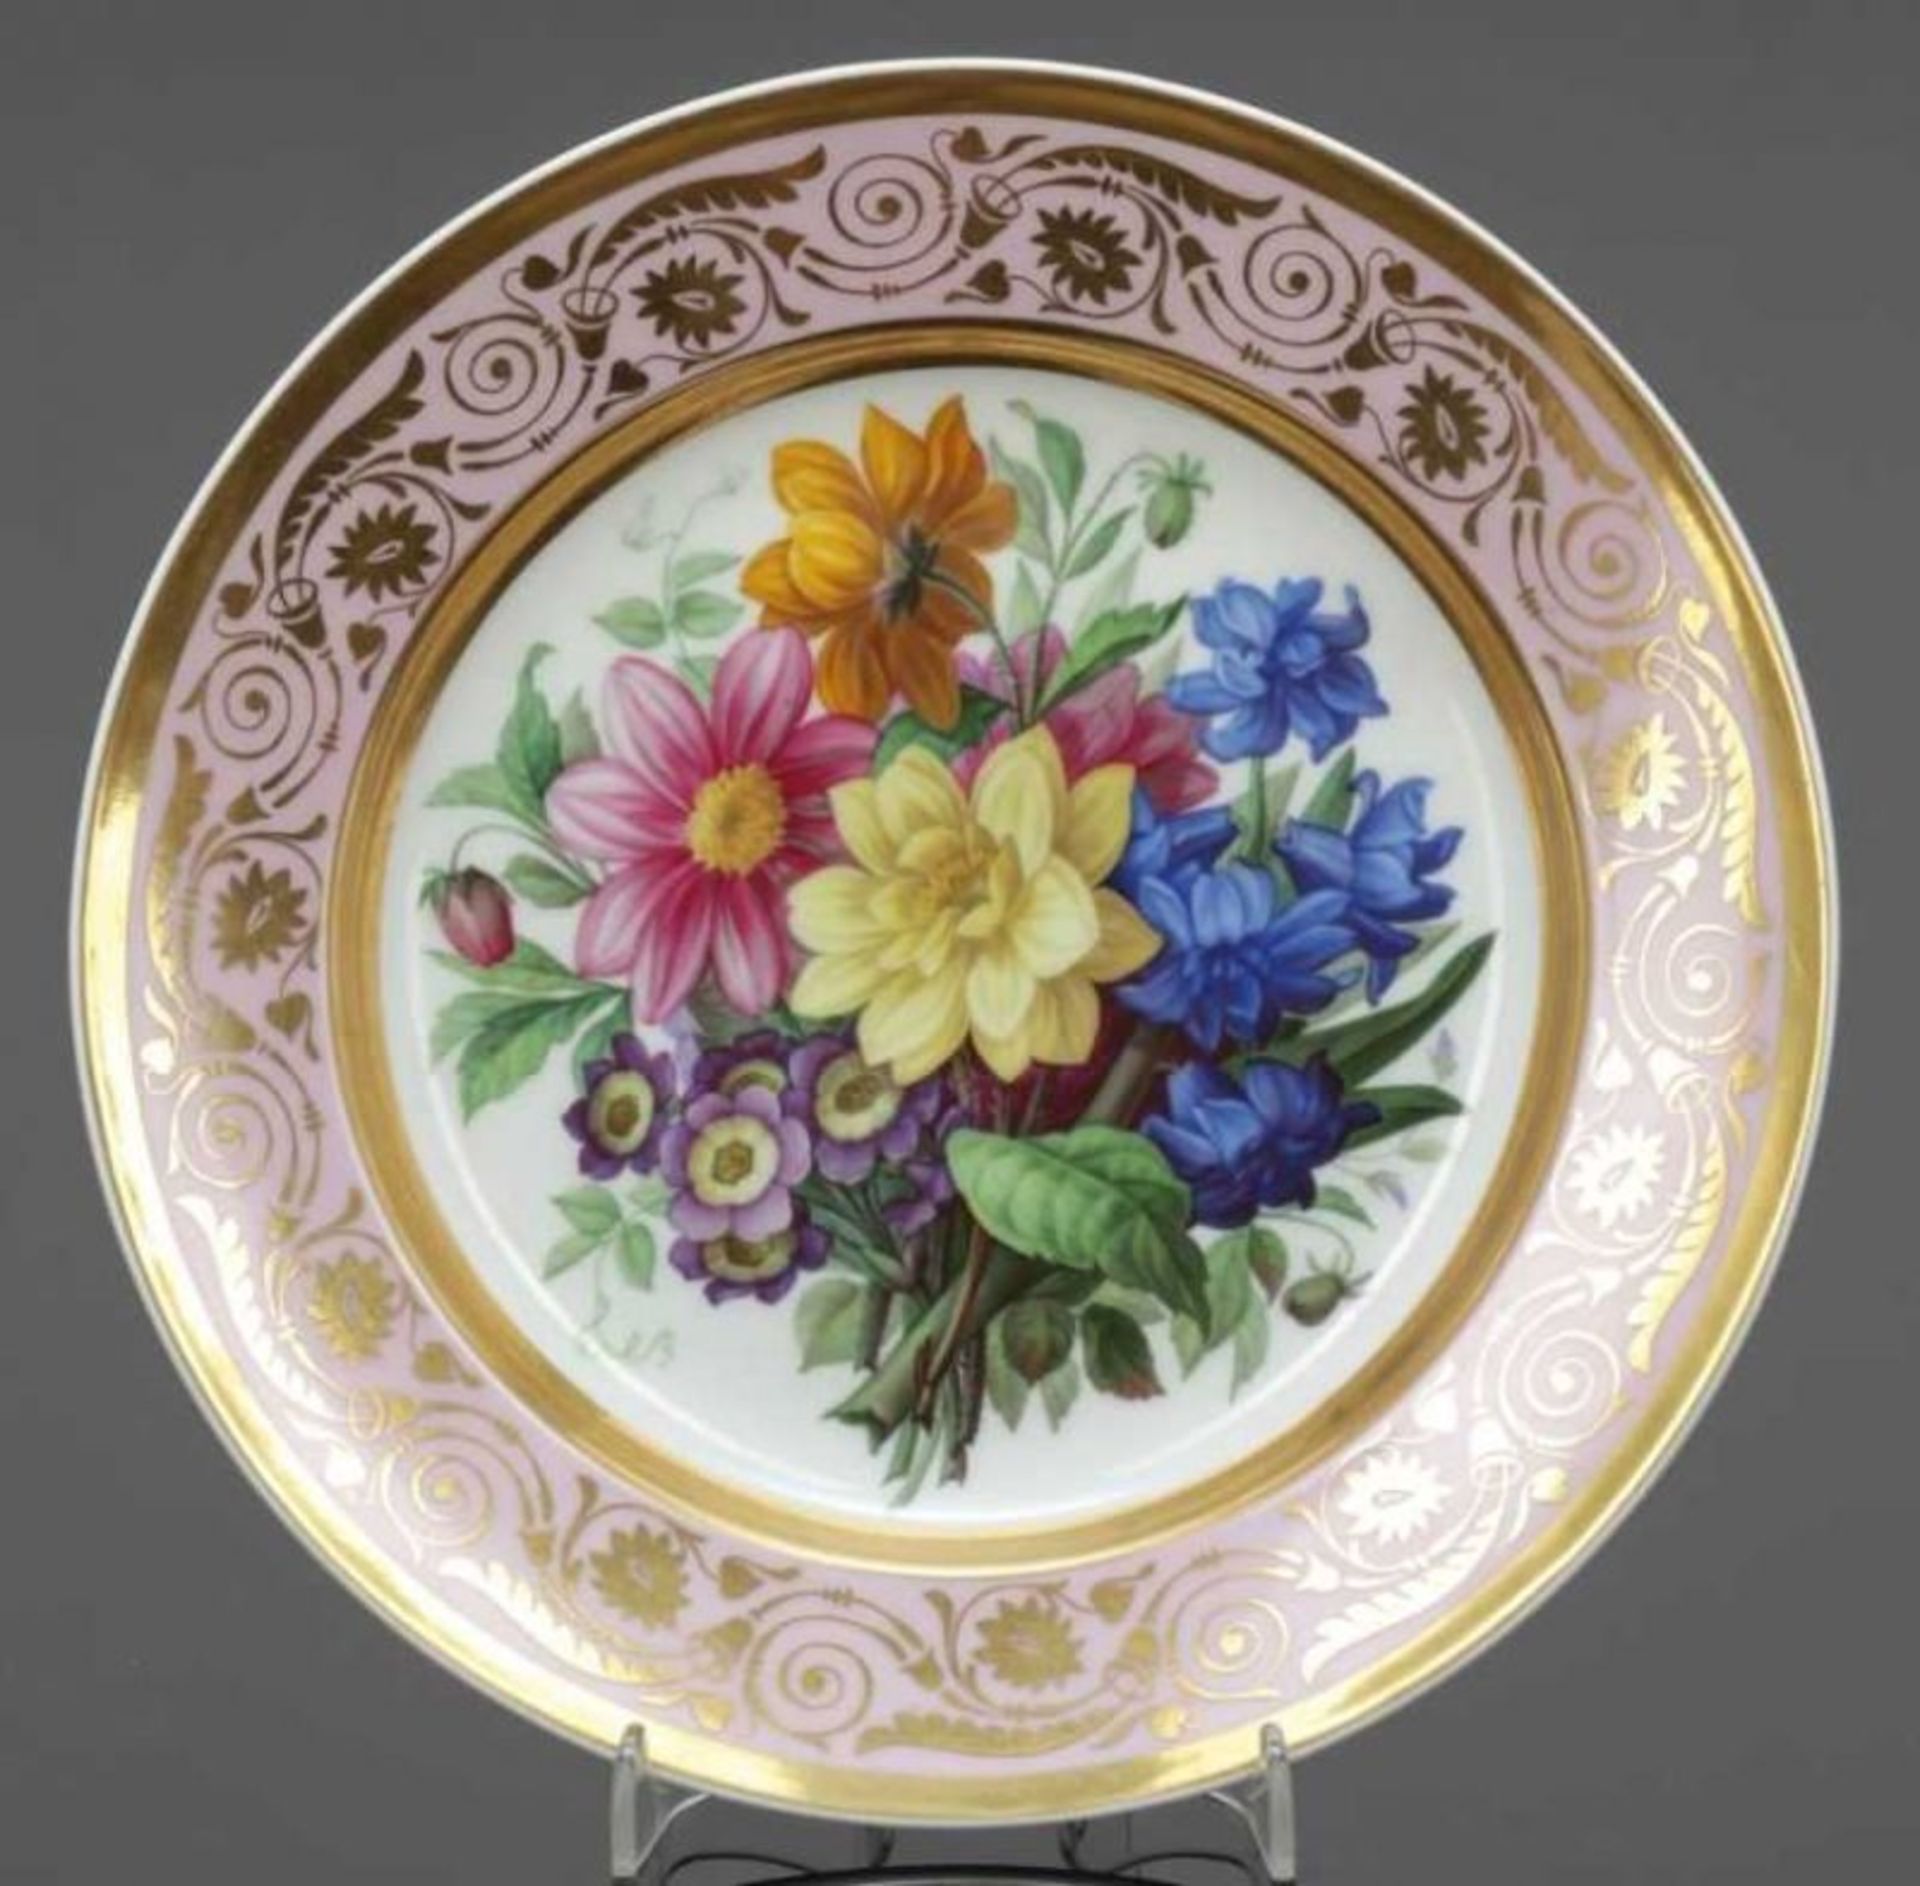 Teller mit Blumenmalerei Königliche Porzellanmanufaktur (KPM), Berlin 1837-1844. - Chamoisfarbenes